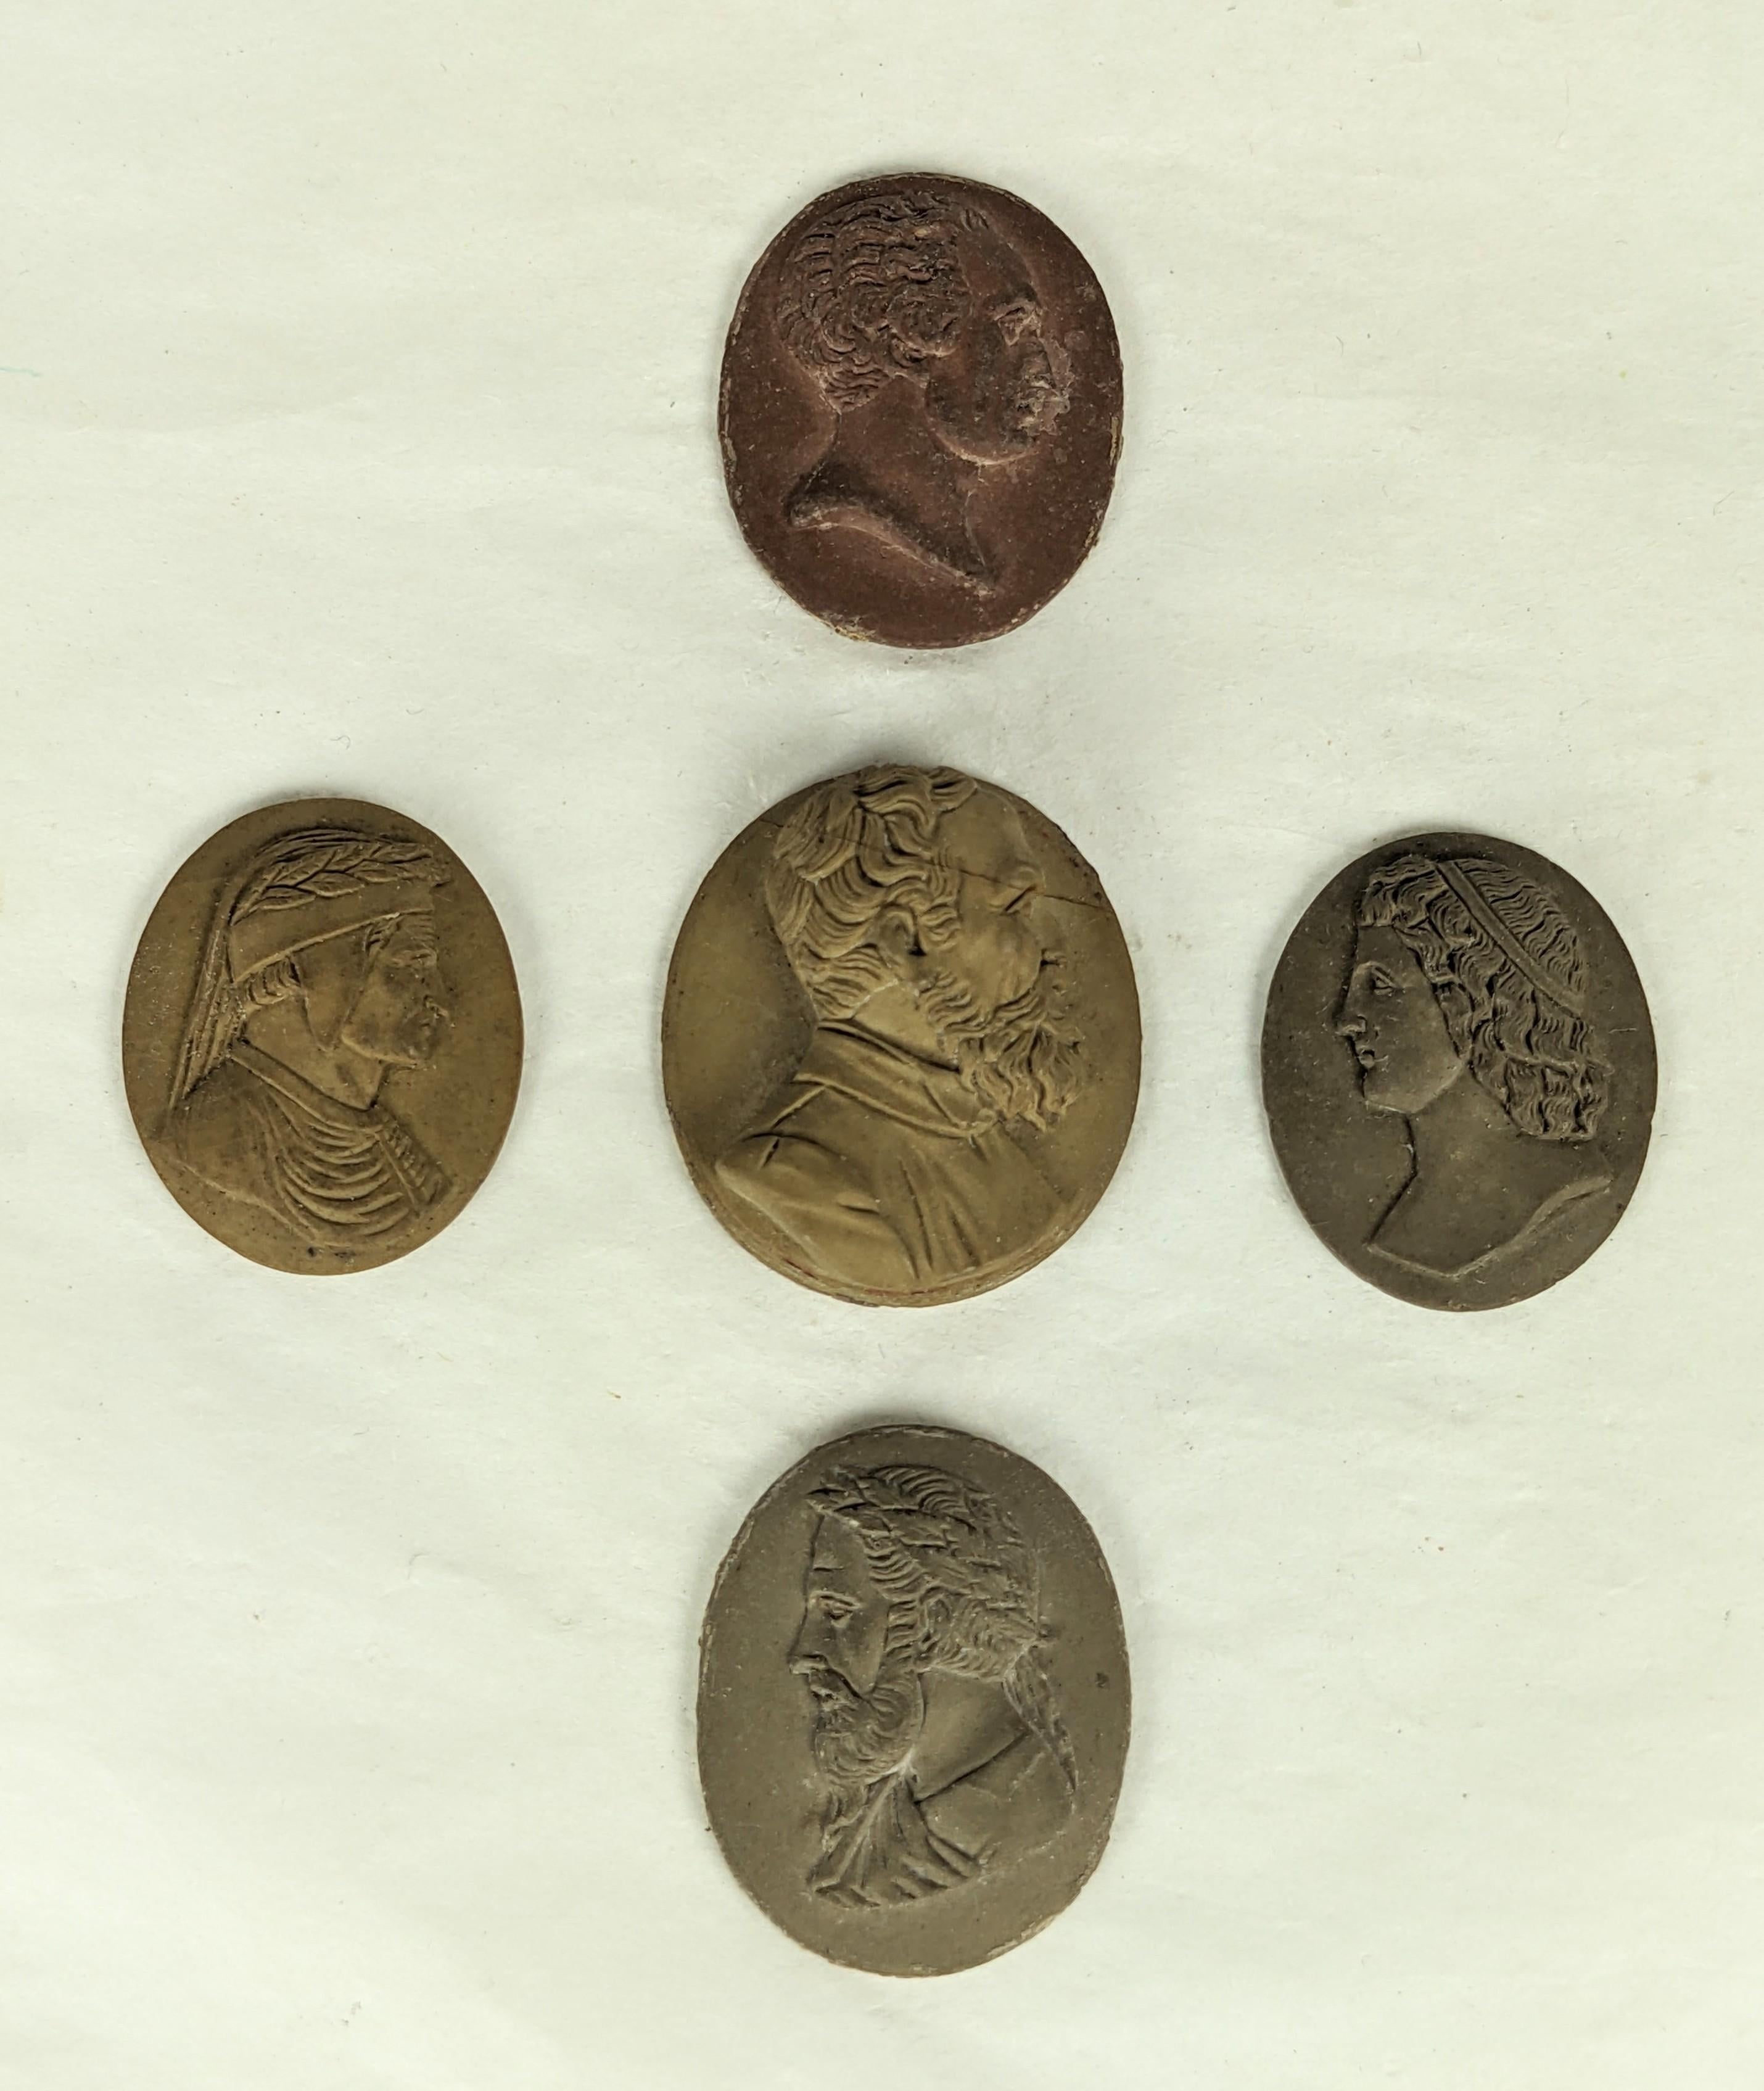 Sammlung von 5 unmontierten Lava-Kameen aus dem 19. Verschiedene Profile bekannter Figuren in verschiedenen Farbtönen aus handgeschnitzter Lava. Die zentrale Kamee hat eine Linie quer über die Stirn, aber der Rest ist in Ordnung. Größte 1,25